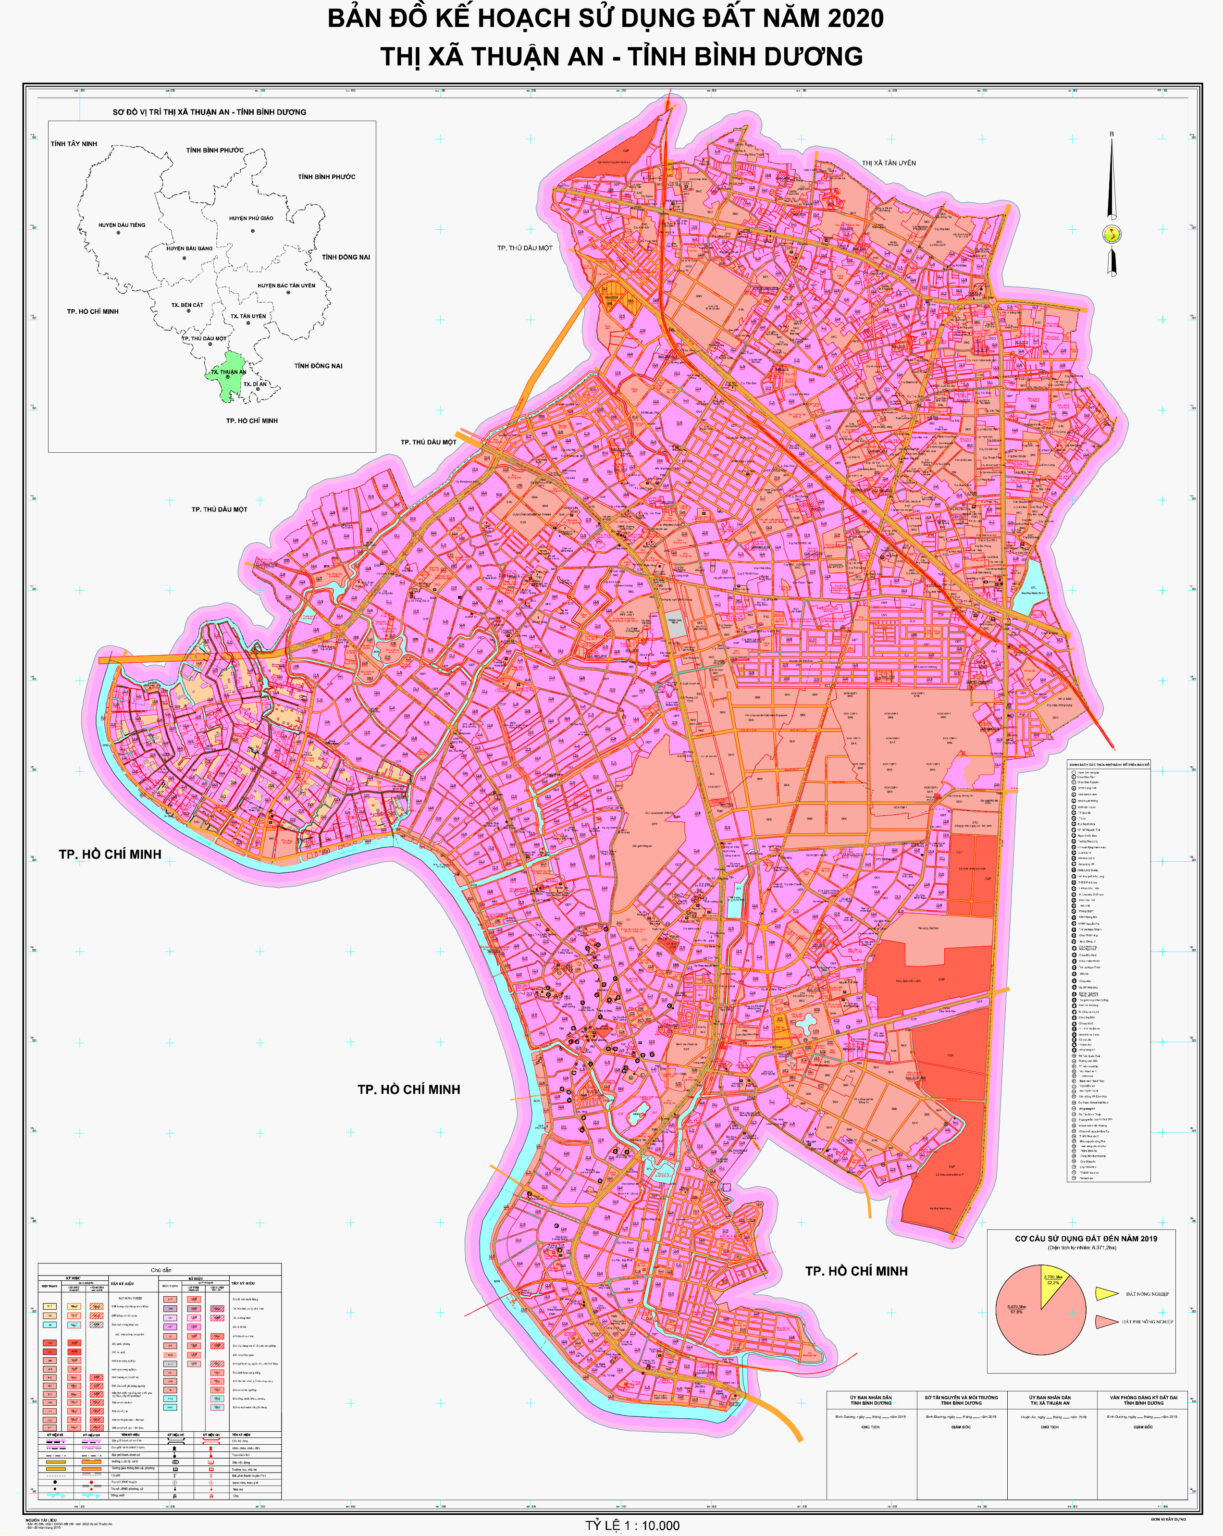 Bản đồ quy hoạch sử dụng đất Thuận An Bình